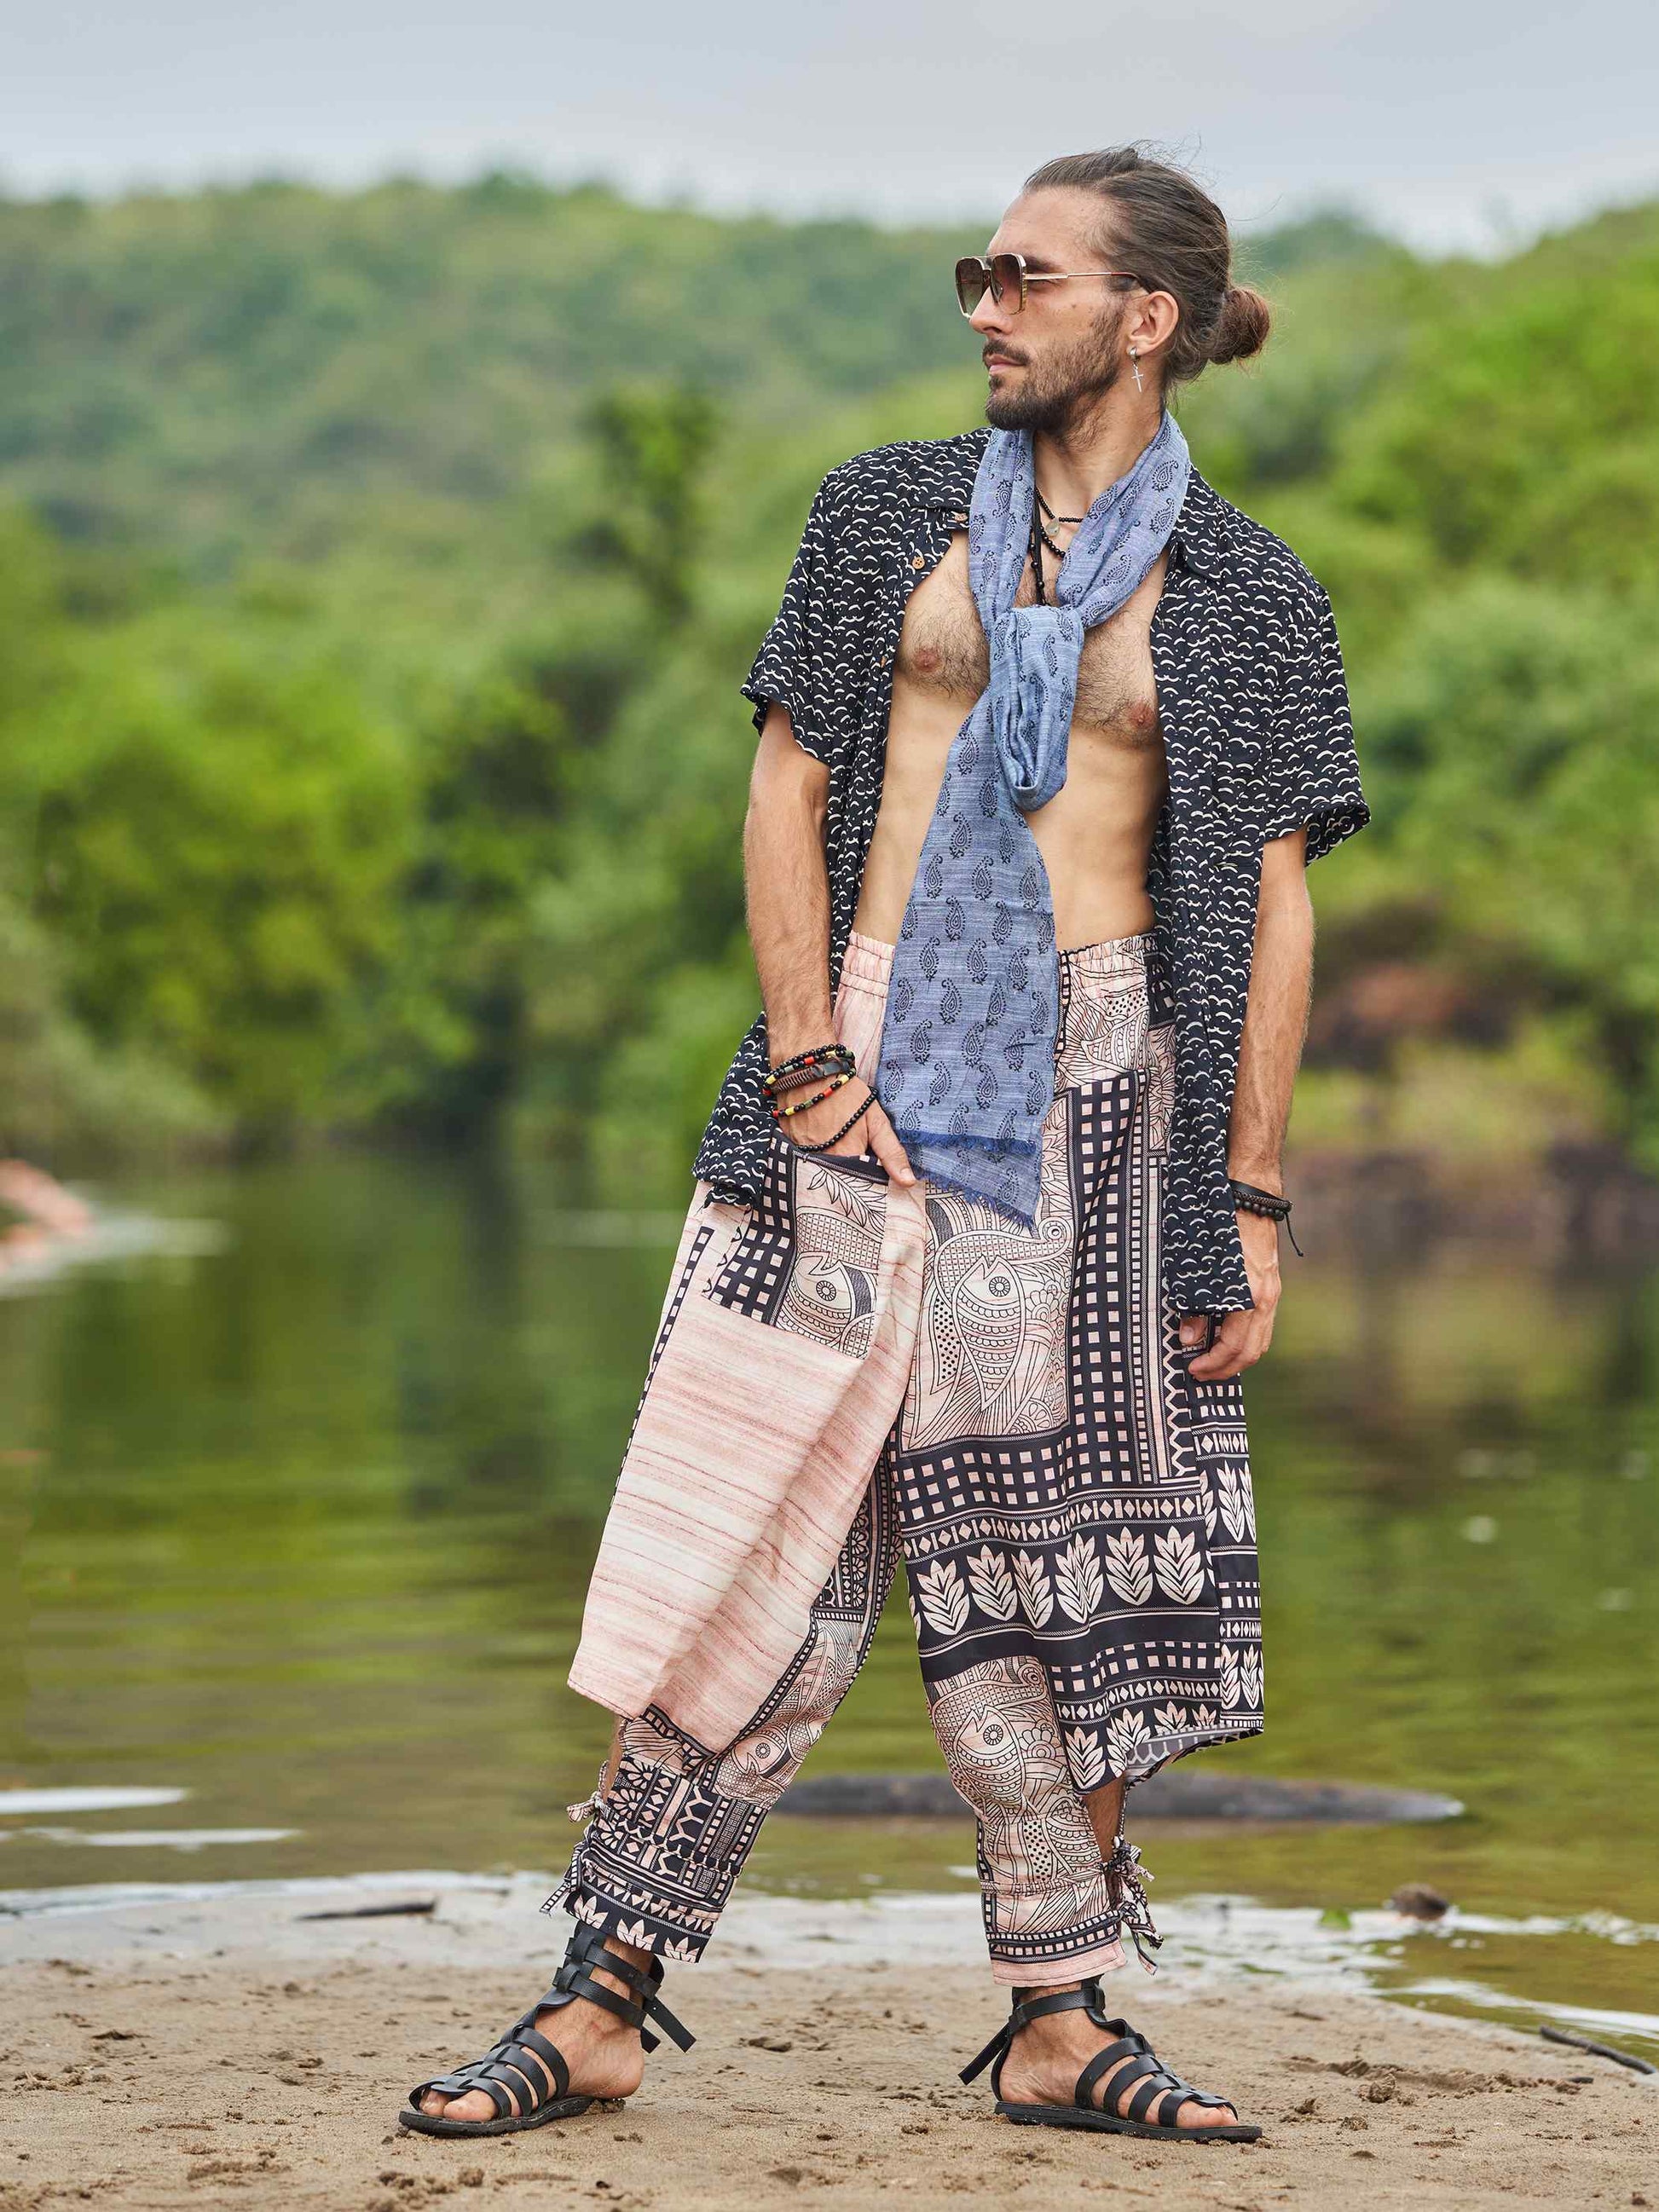 Buy Men's Artistic Tribal Harem Pants for Travel Dance Yoga